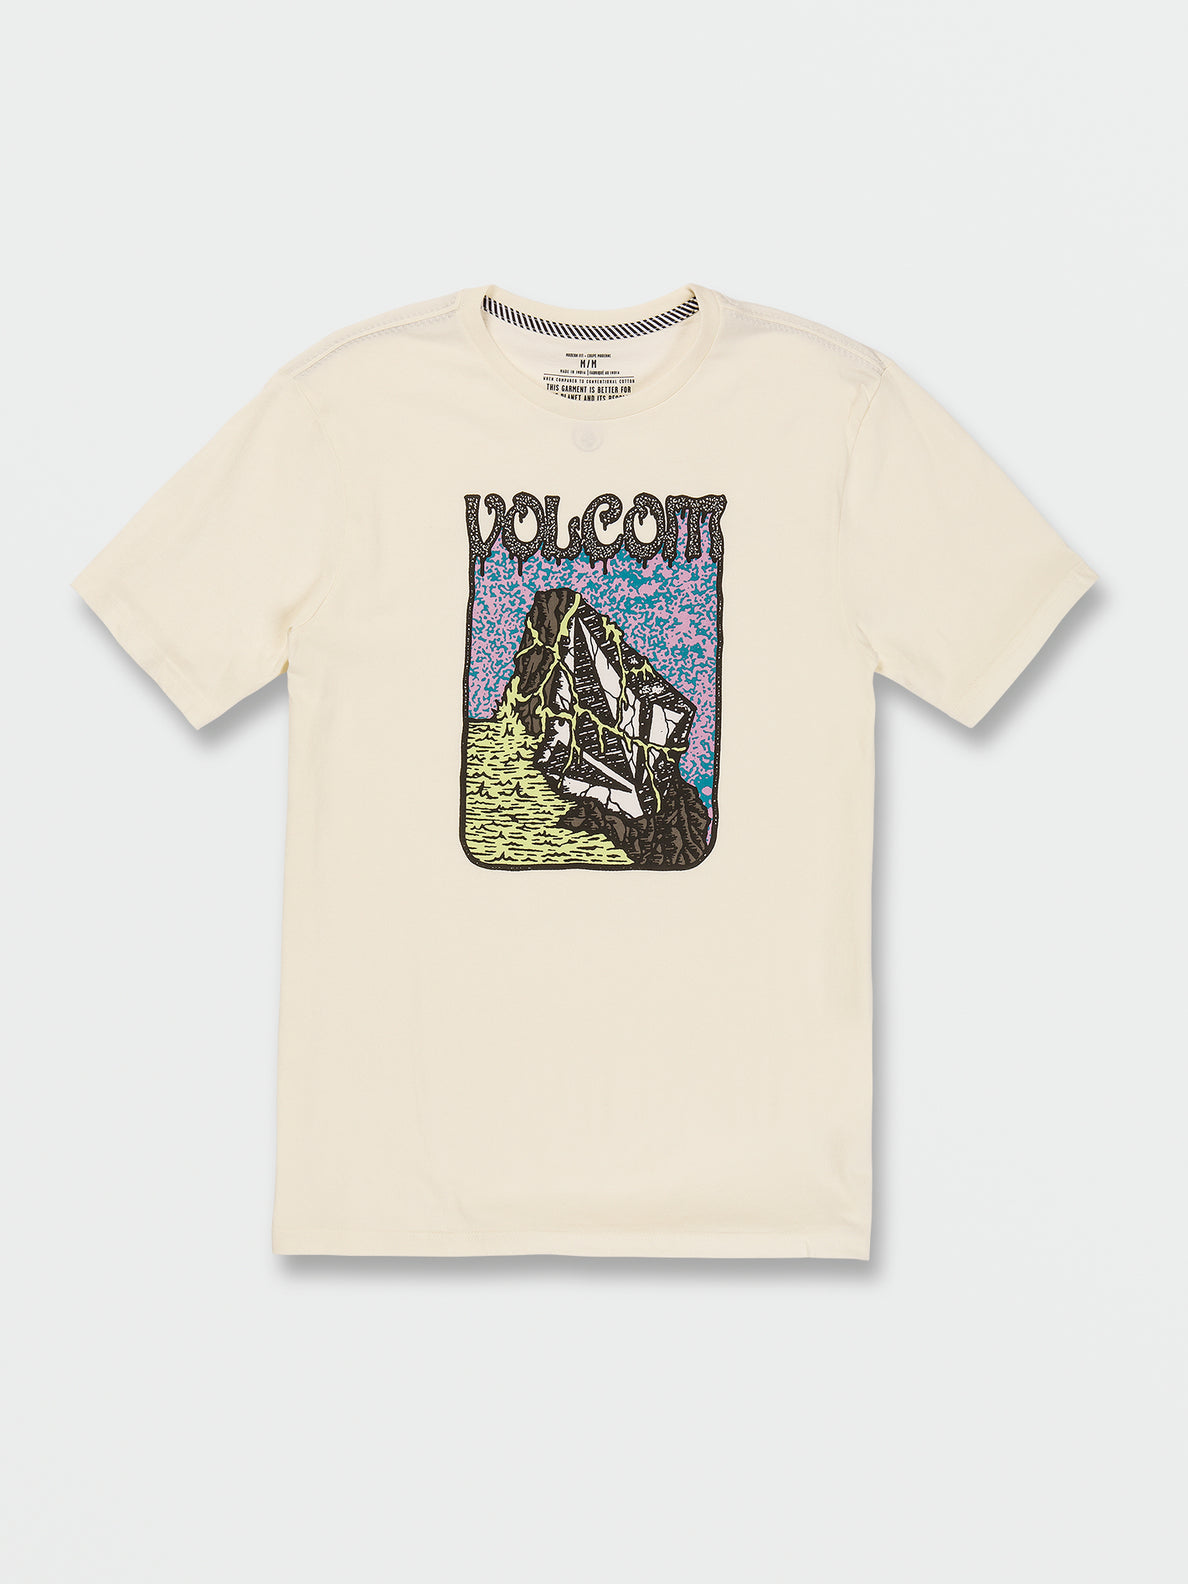 T-Shirt Submergé Volcom Farm to Yard - Off White | Boutique Volcom | Collection_Zalando | Nouveaux produits | Produits les plus récents | Produits les plus vendus | t-shirts pour hommes | T-shirts à manches courtes pour hommes | surfdevils.com